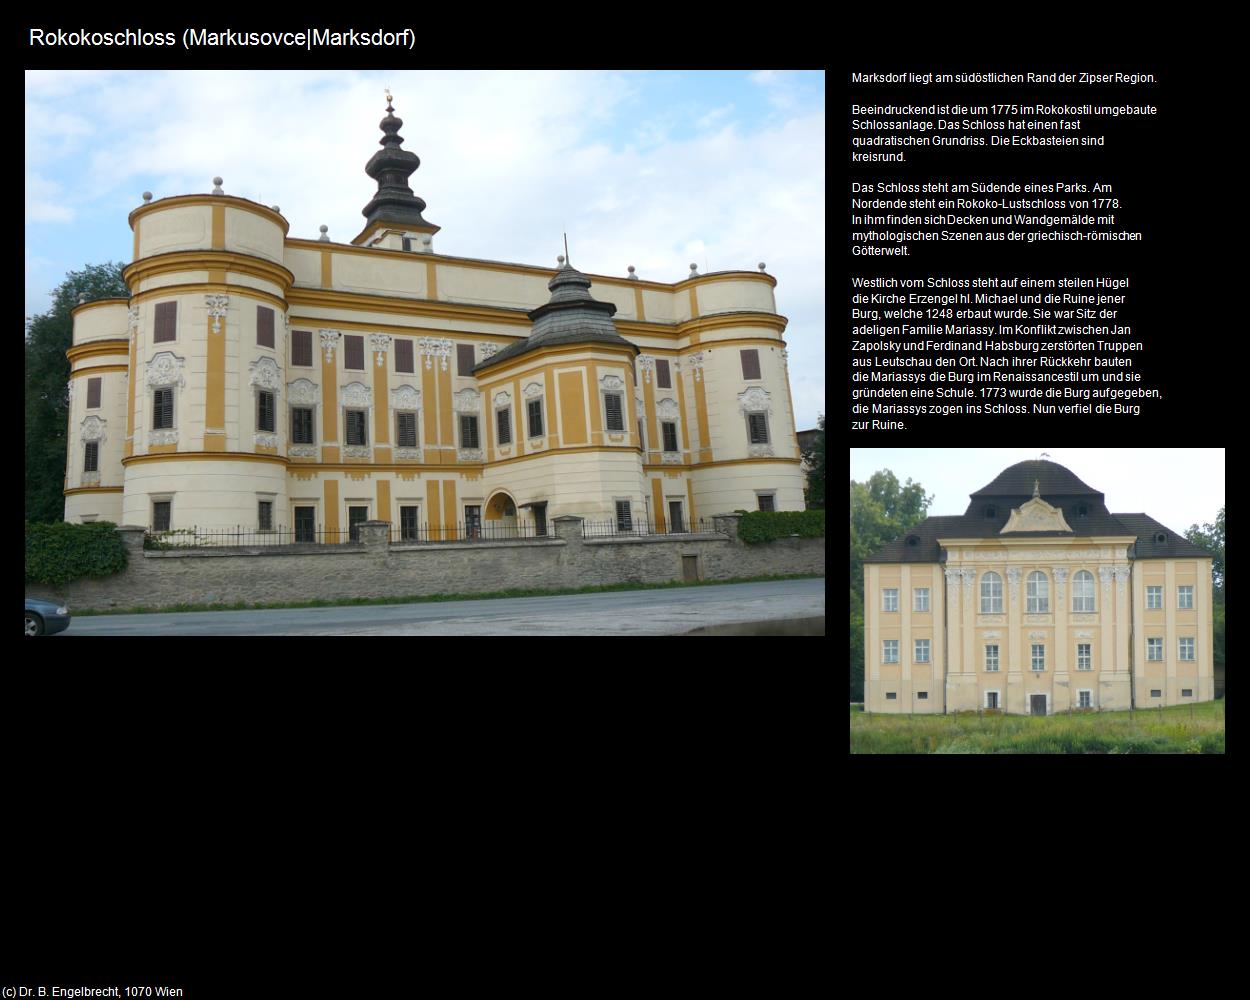 Rokokoschloss (Markusovce|Marksdorf) in SLOWAKEI